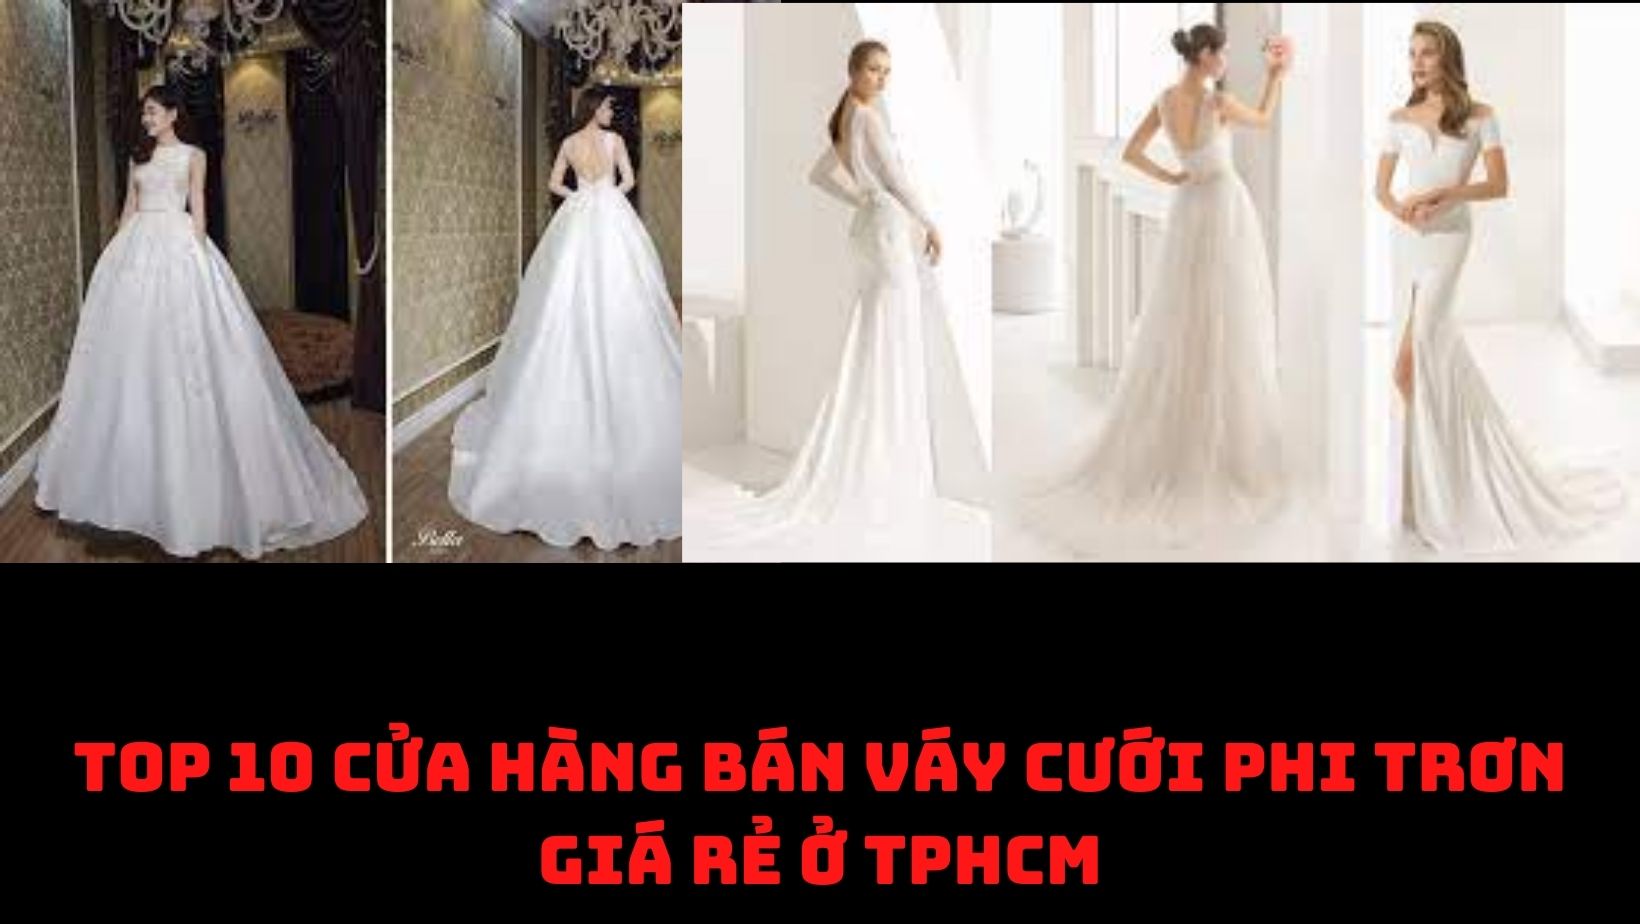 Top 10 Cửa hàng bán Váy cưới phi trơn giá rẻ ở TPHCM